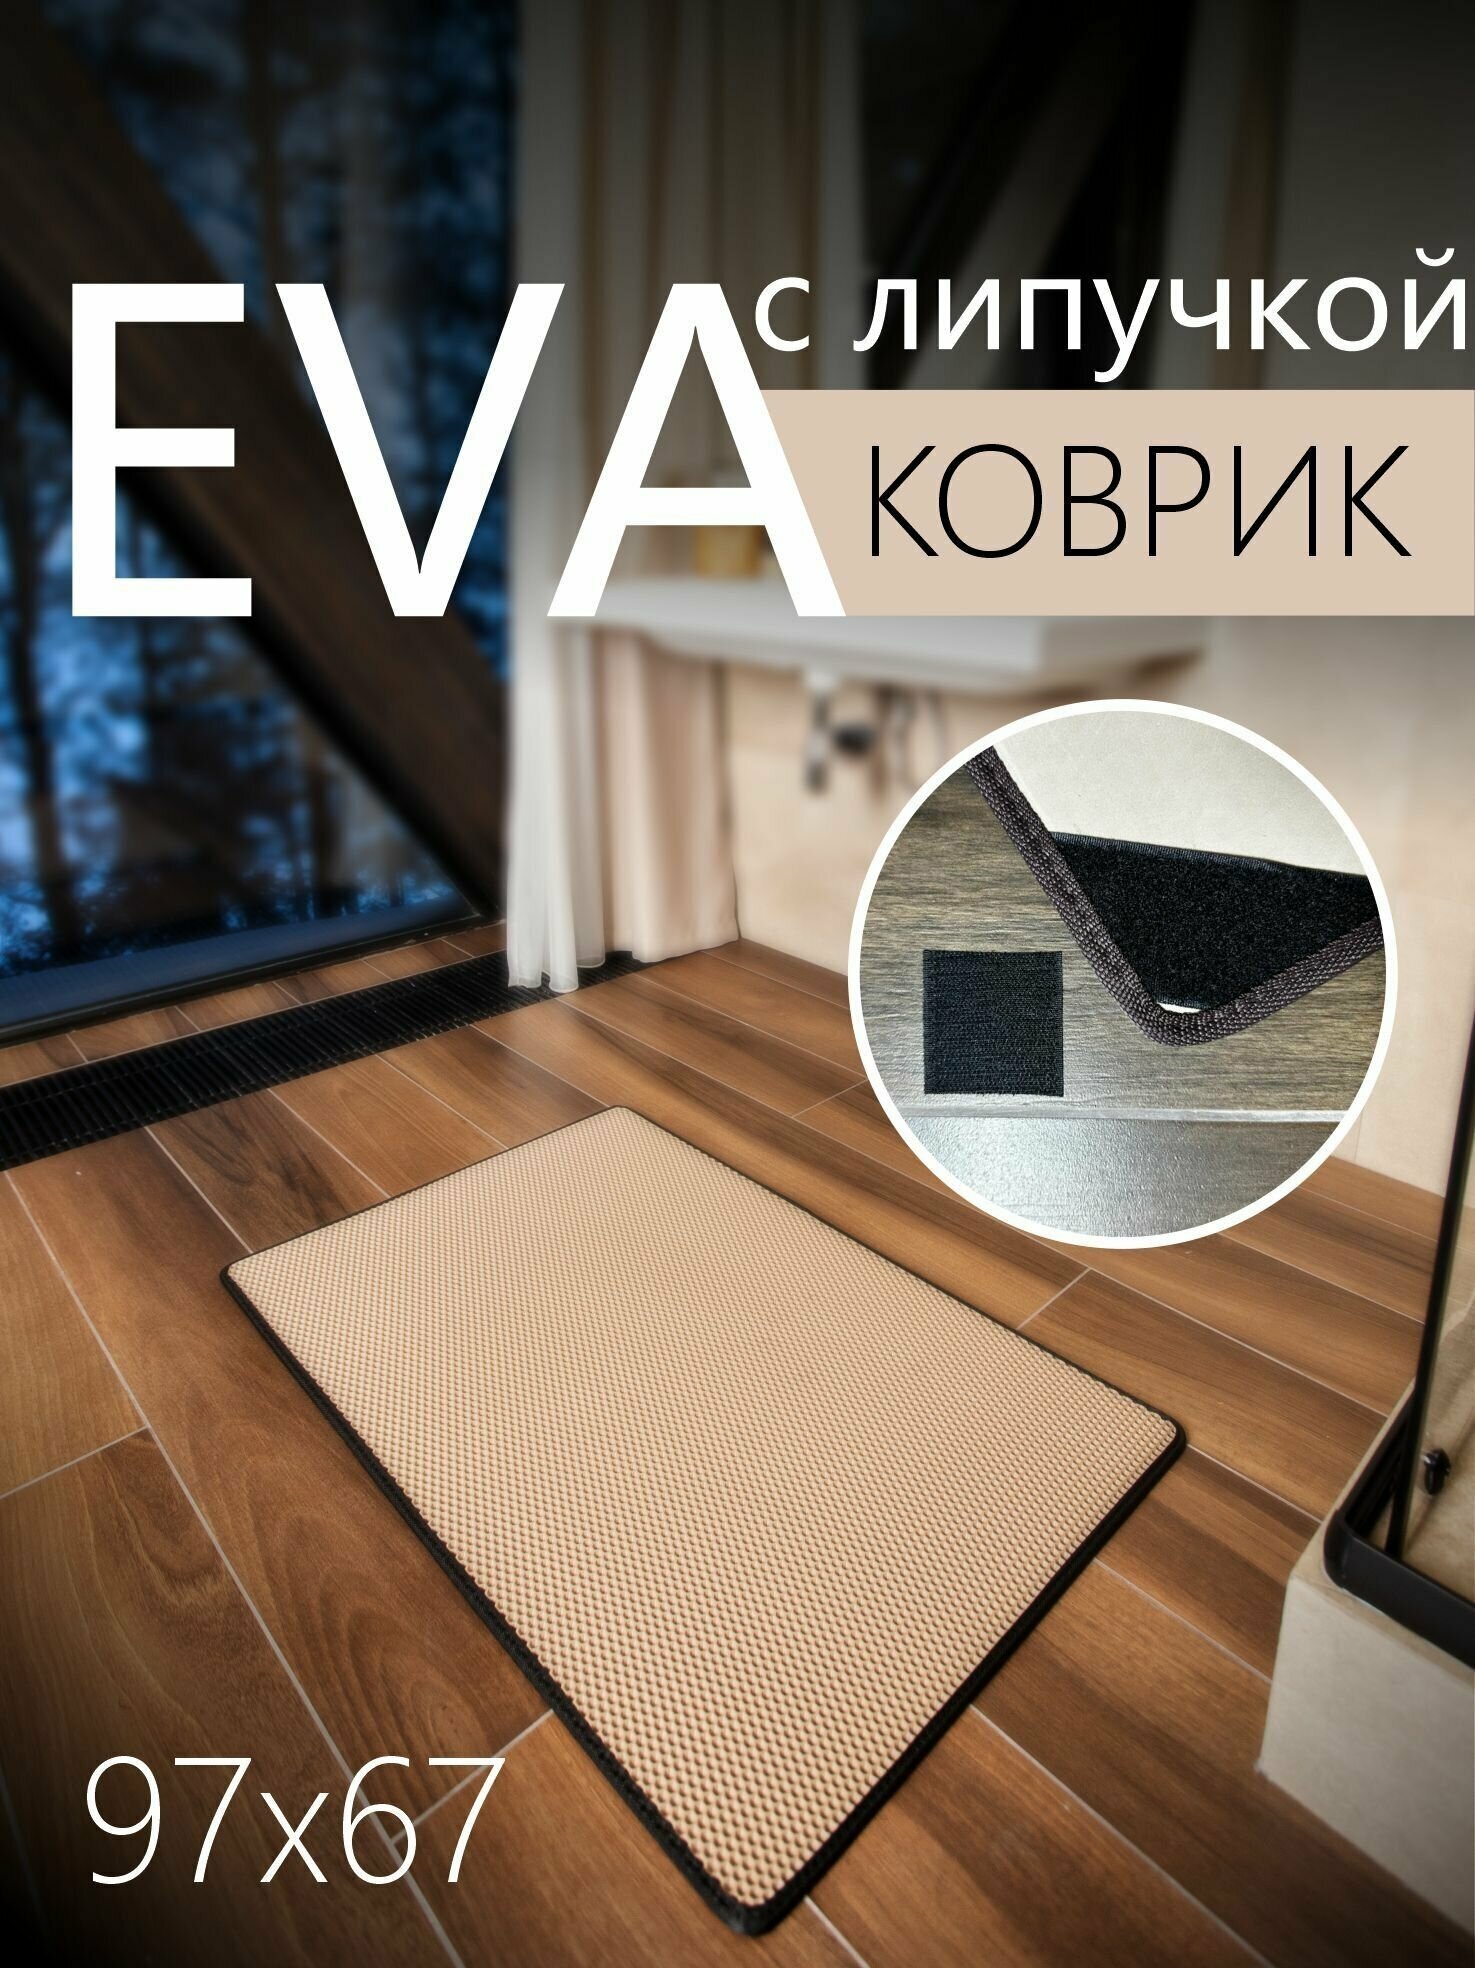 Коврик придверный противоскользящий EVA ЭВА универсальный 97х67 сантиметров. Липучки для фиксации. Соты Бежевый с черной окантовкой